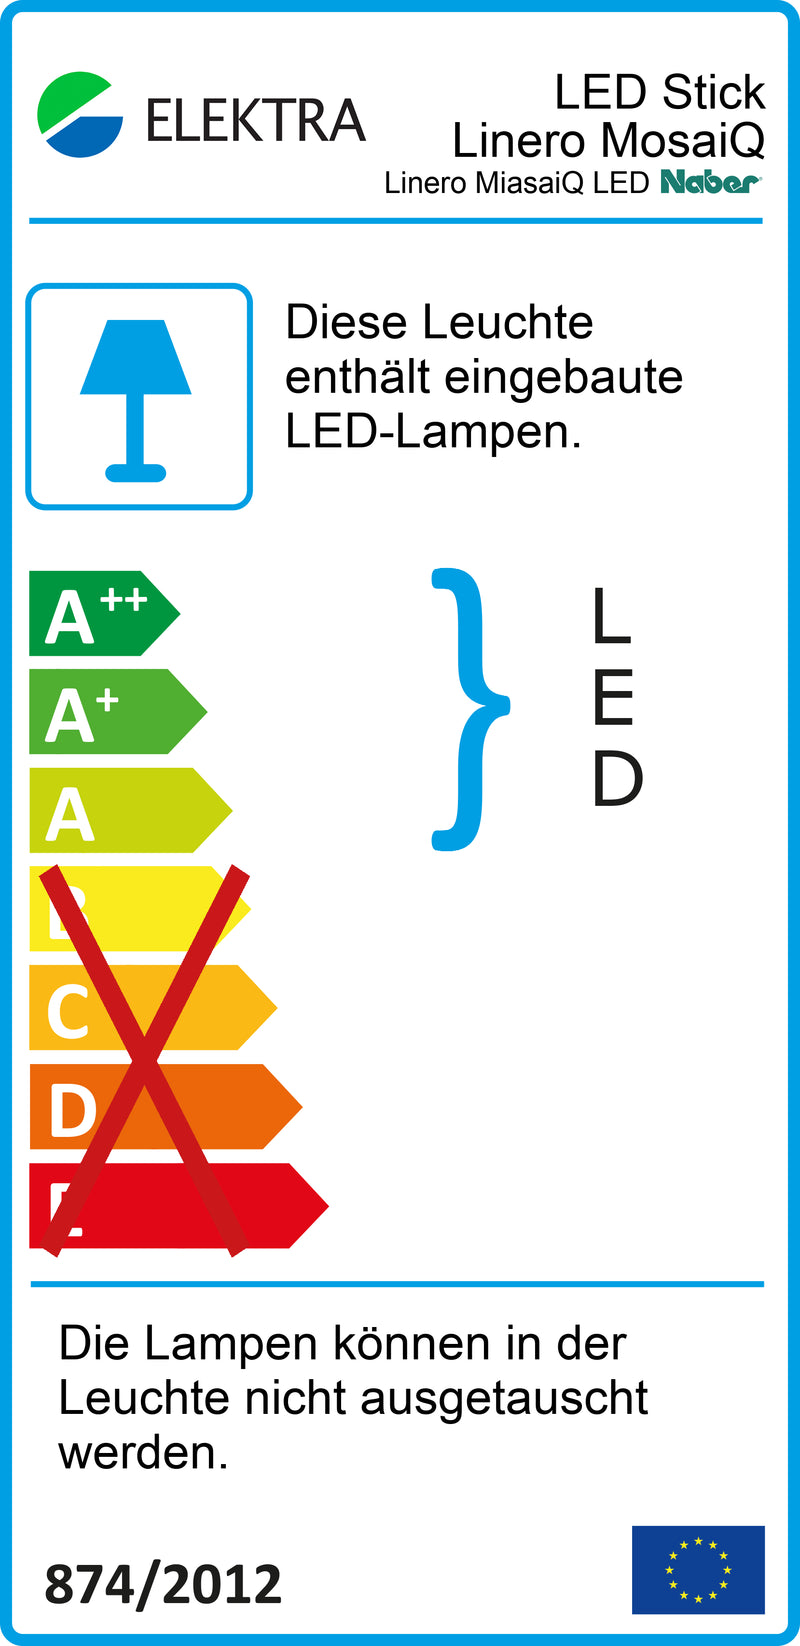 E-Label zu Linero MosaiQ LED Stripe als Variante L 600 mm von Naber GmbH in der Kategorie Nischenausstattung in Österreich auf conceptshop.at